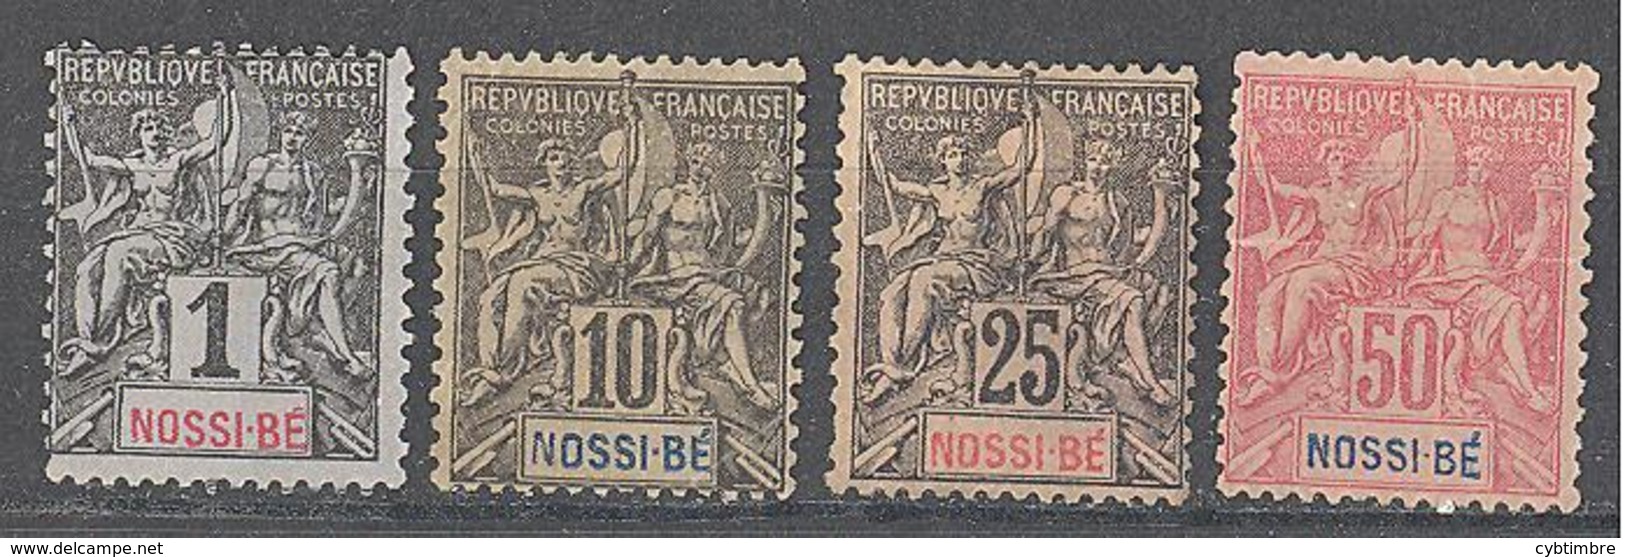 Nossi-Bé: 4 Valeurs De La Serie Yvert N° 27/37(*) - Unused Stamps